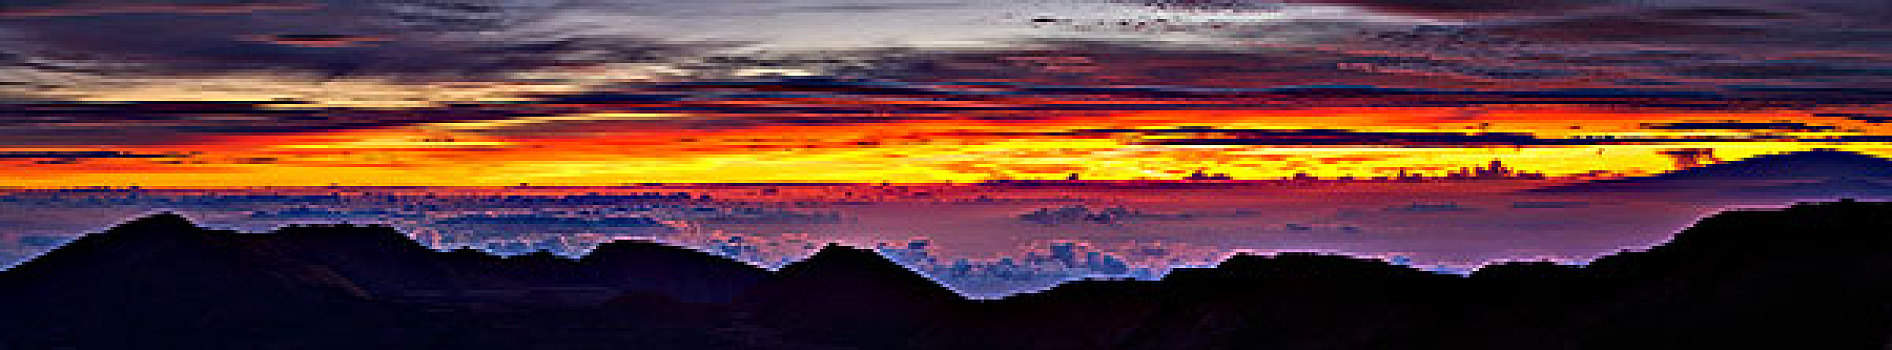 云,上方,山峦,日出,哈雷阿卡拉火山,毛伊岛,夏威夷,美国